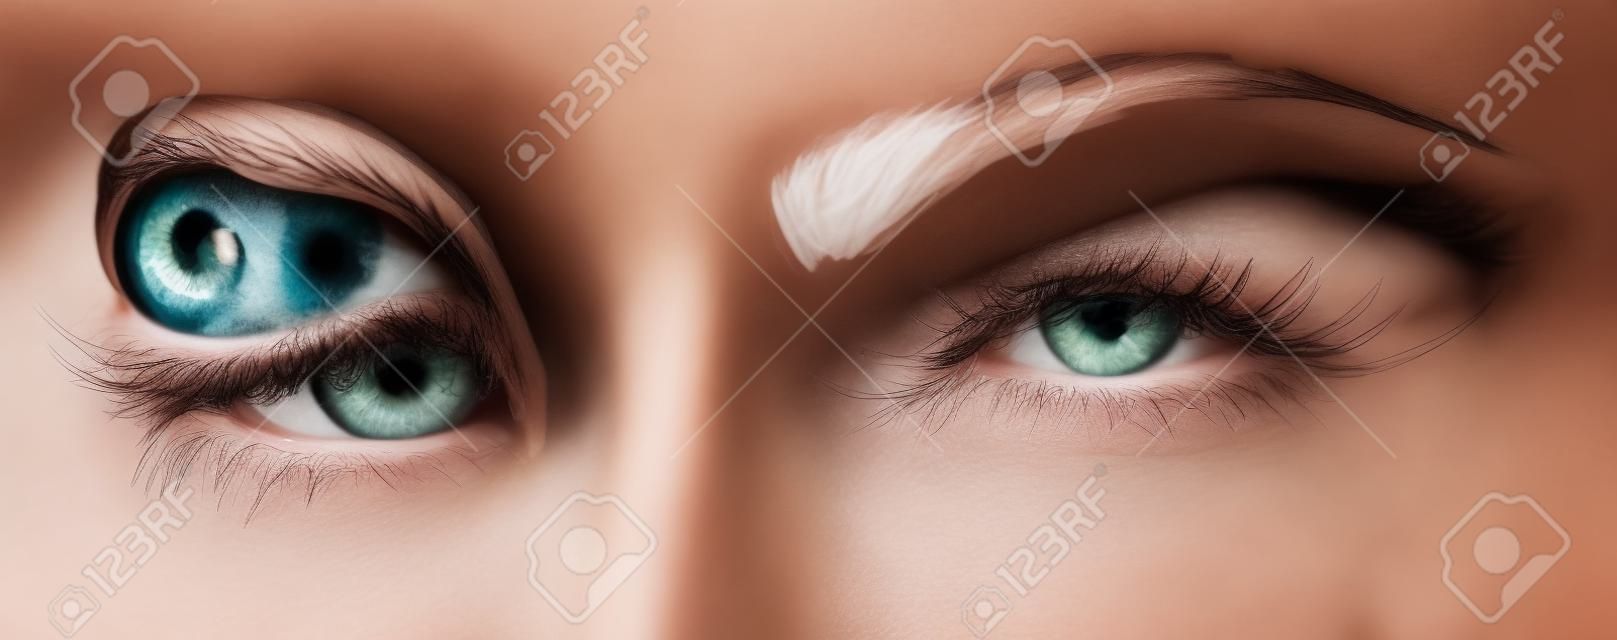 아름다운 여성의 눈